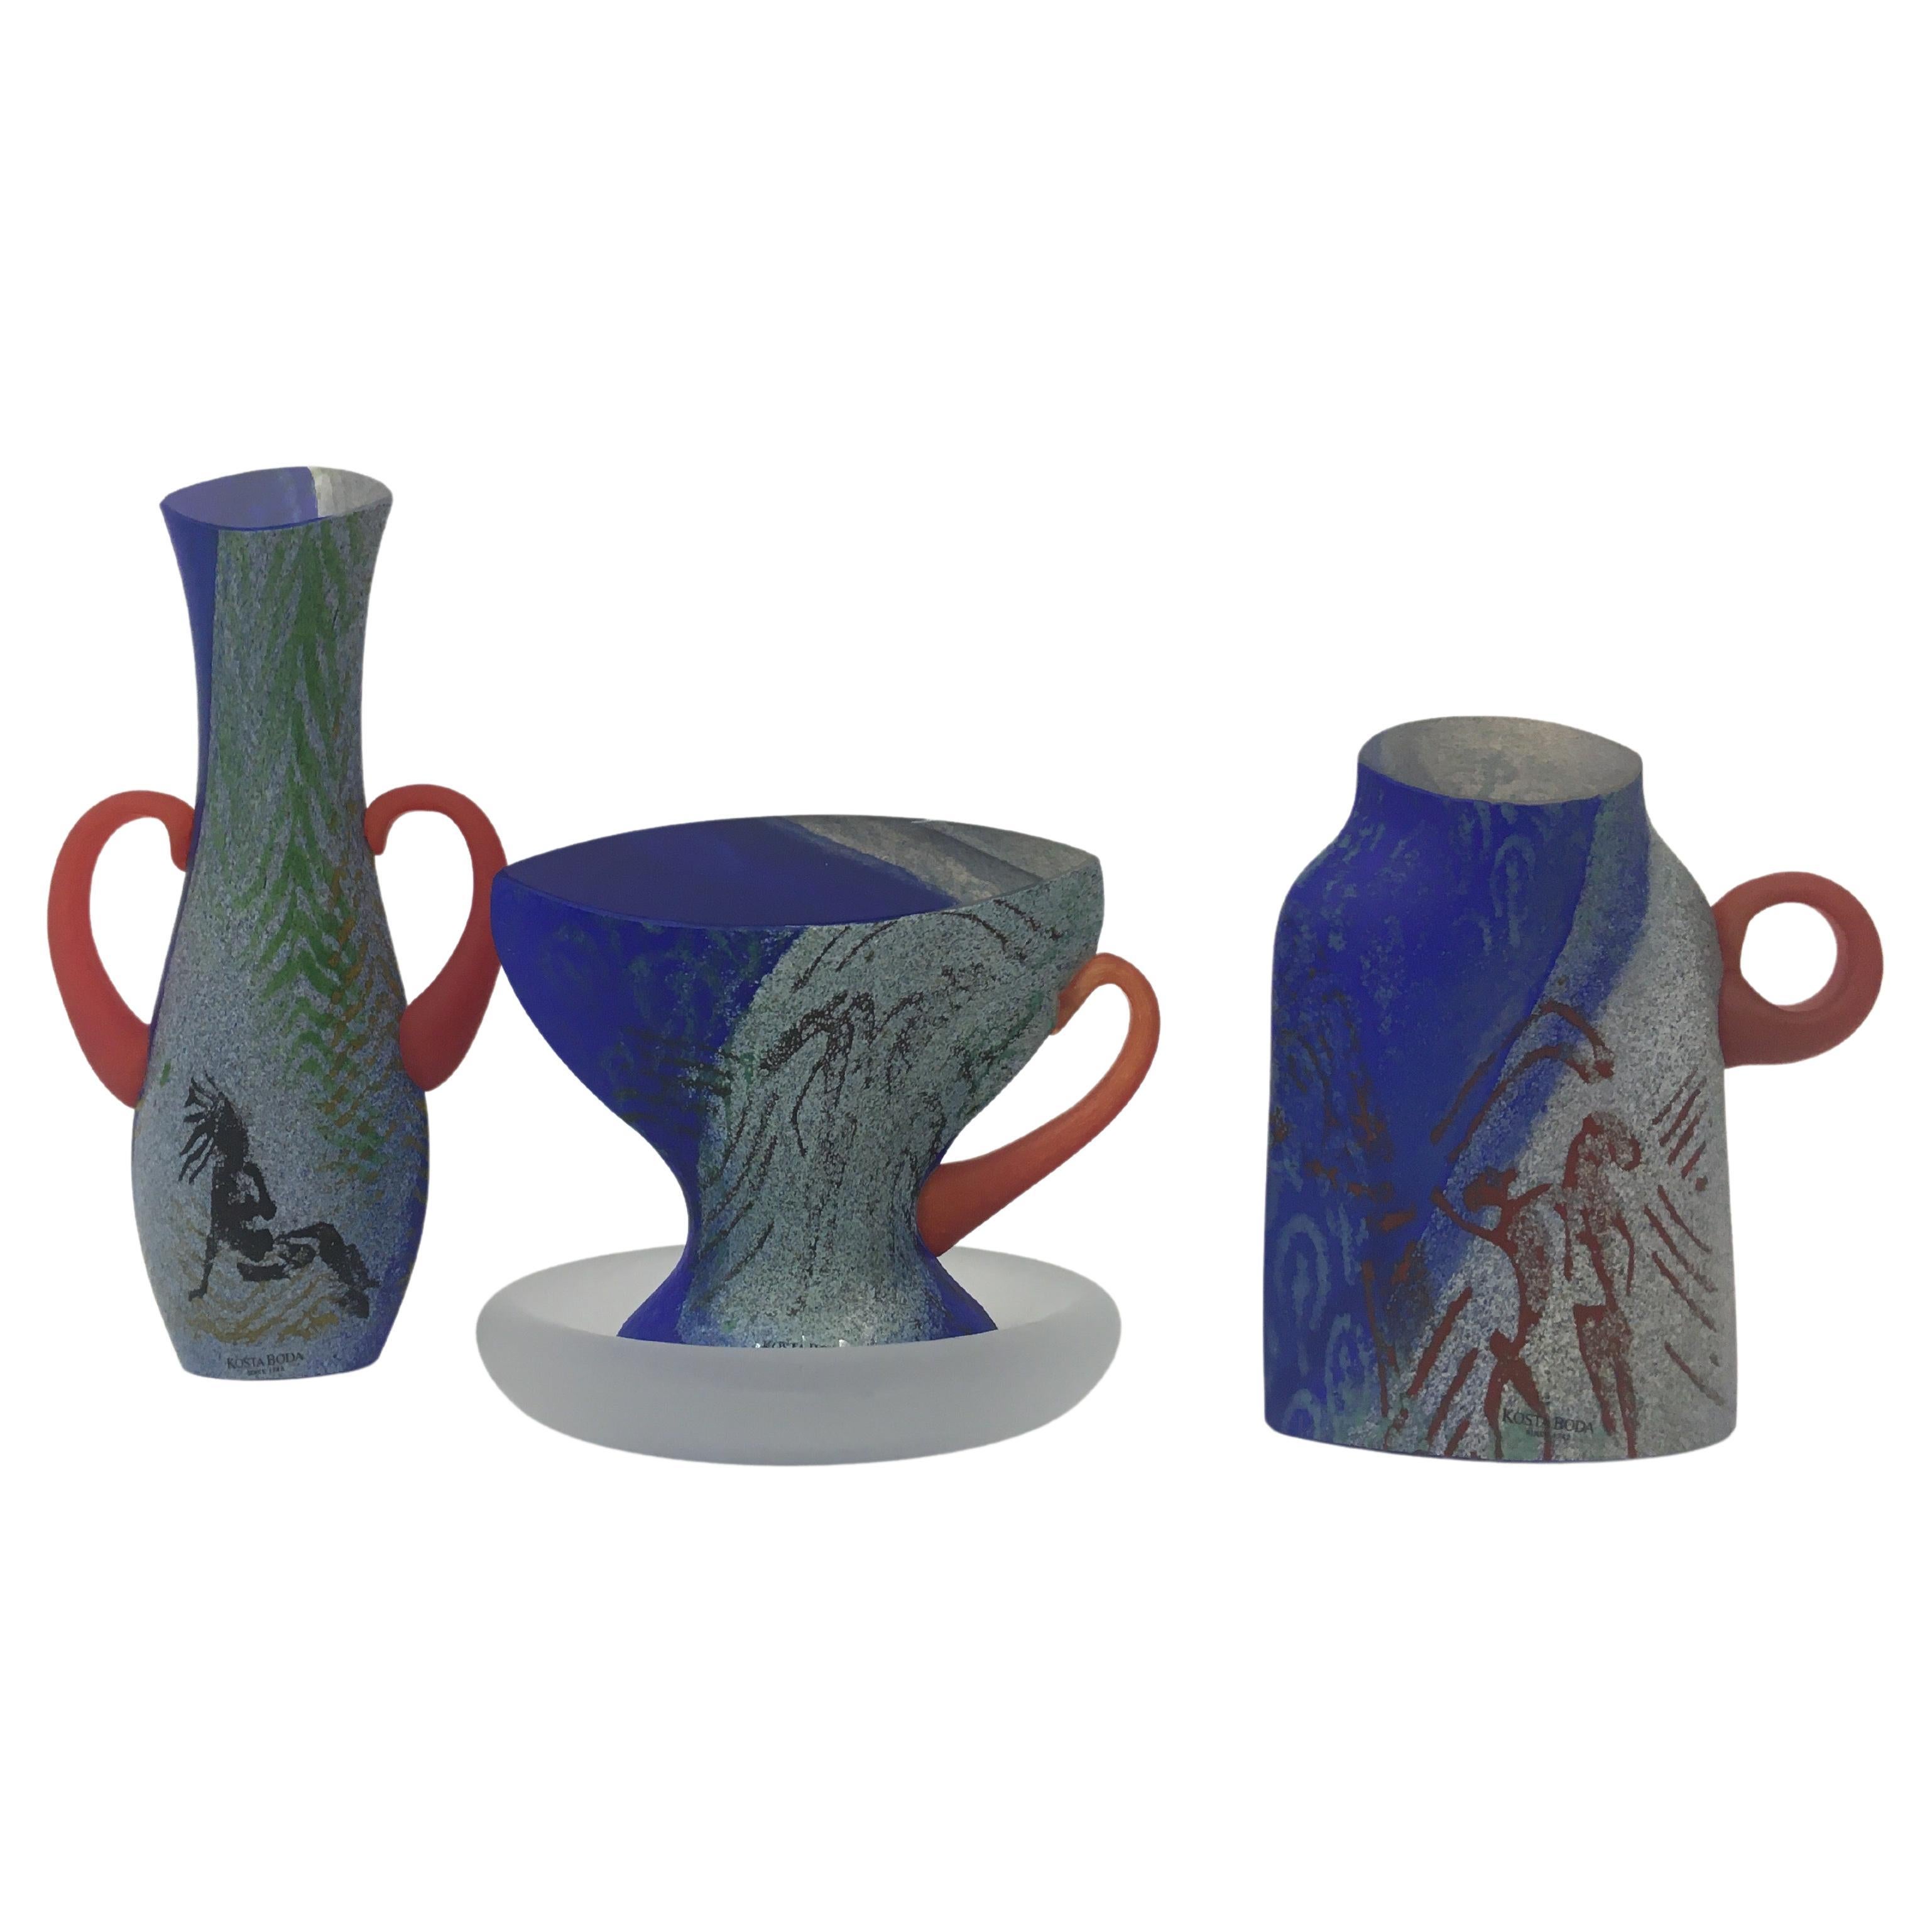 Rare Kjell Engman for Kosta Boda set of glassware teacup vase and sugar pot